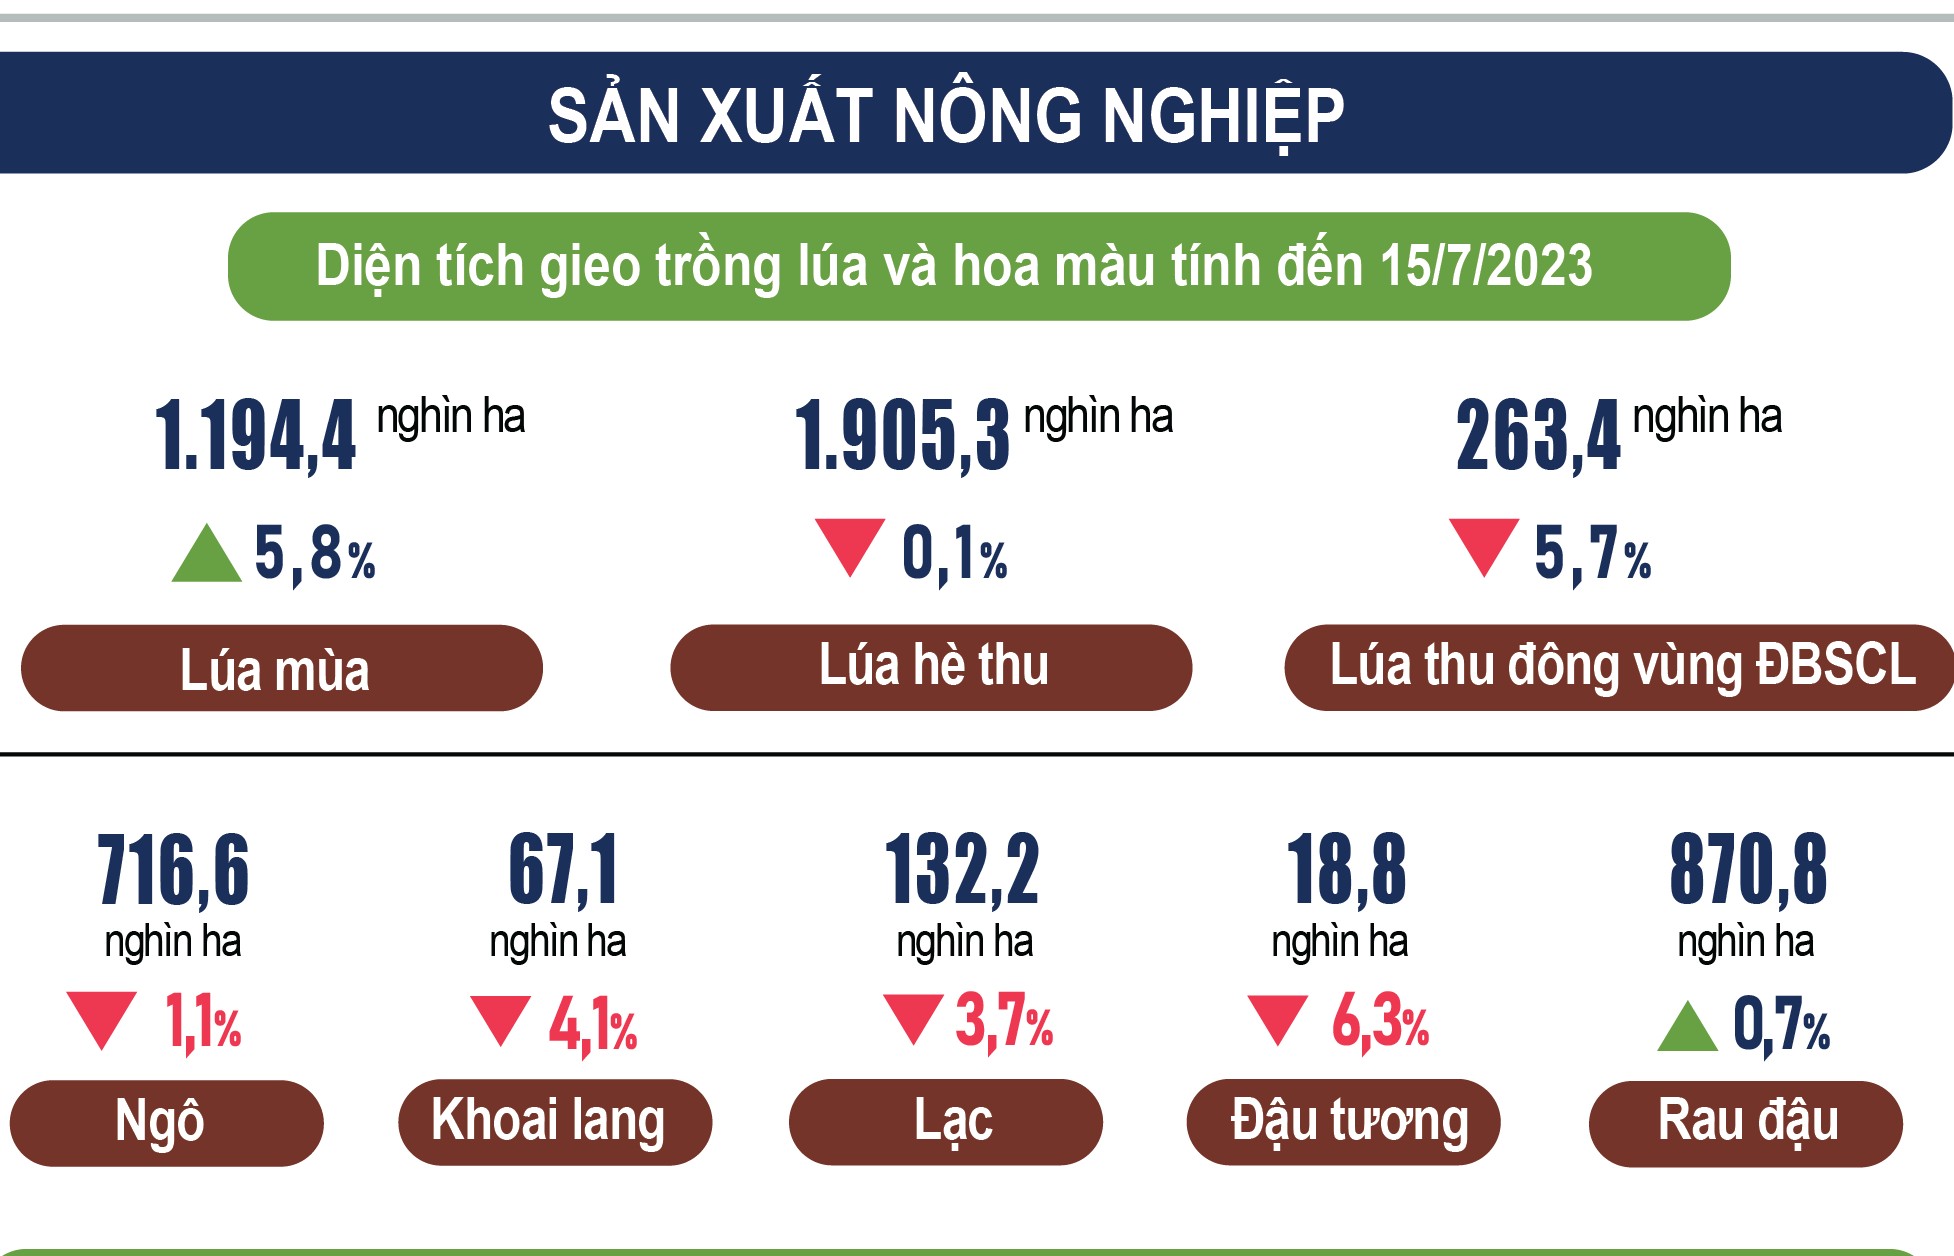 inforgraphics san xuat nong nghiep 7 thang nam 2023